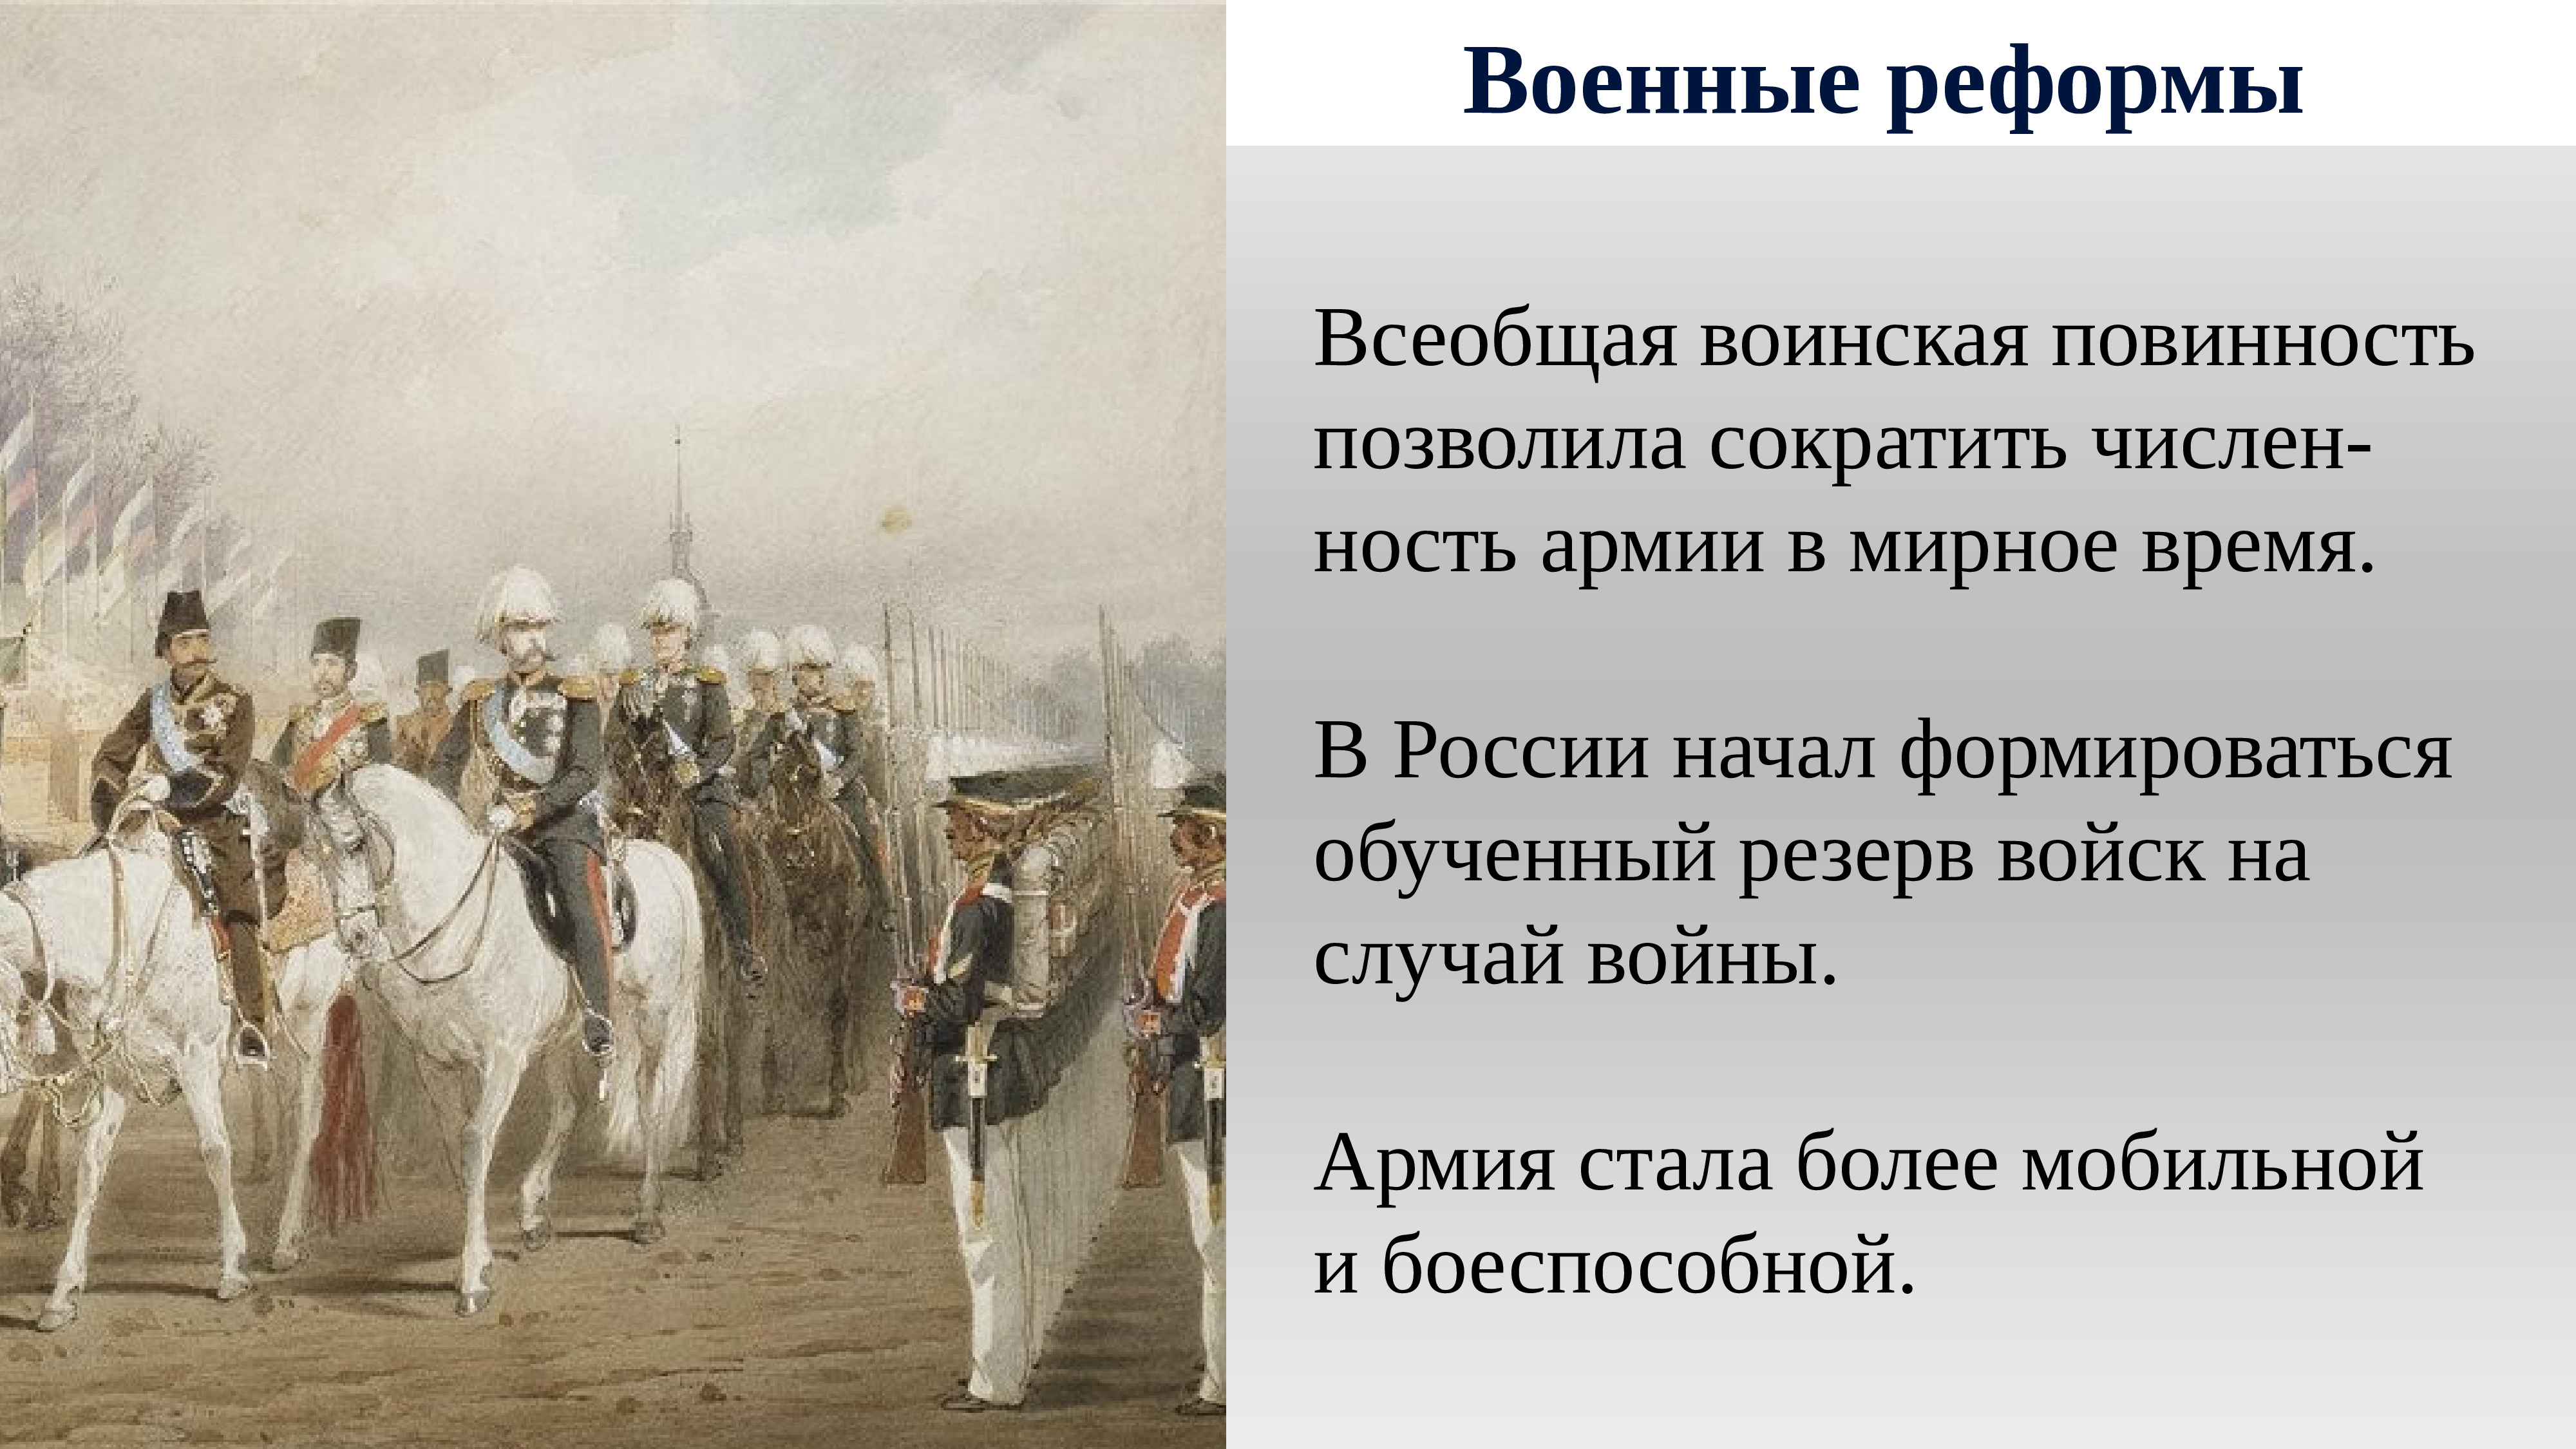 Введение в россии всесословной воинской повинности год. Всеобщая воинская повинность 1874.